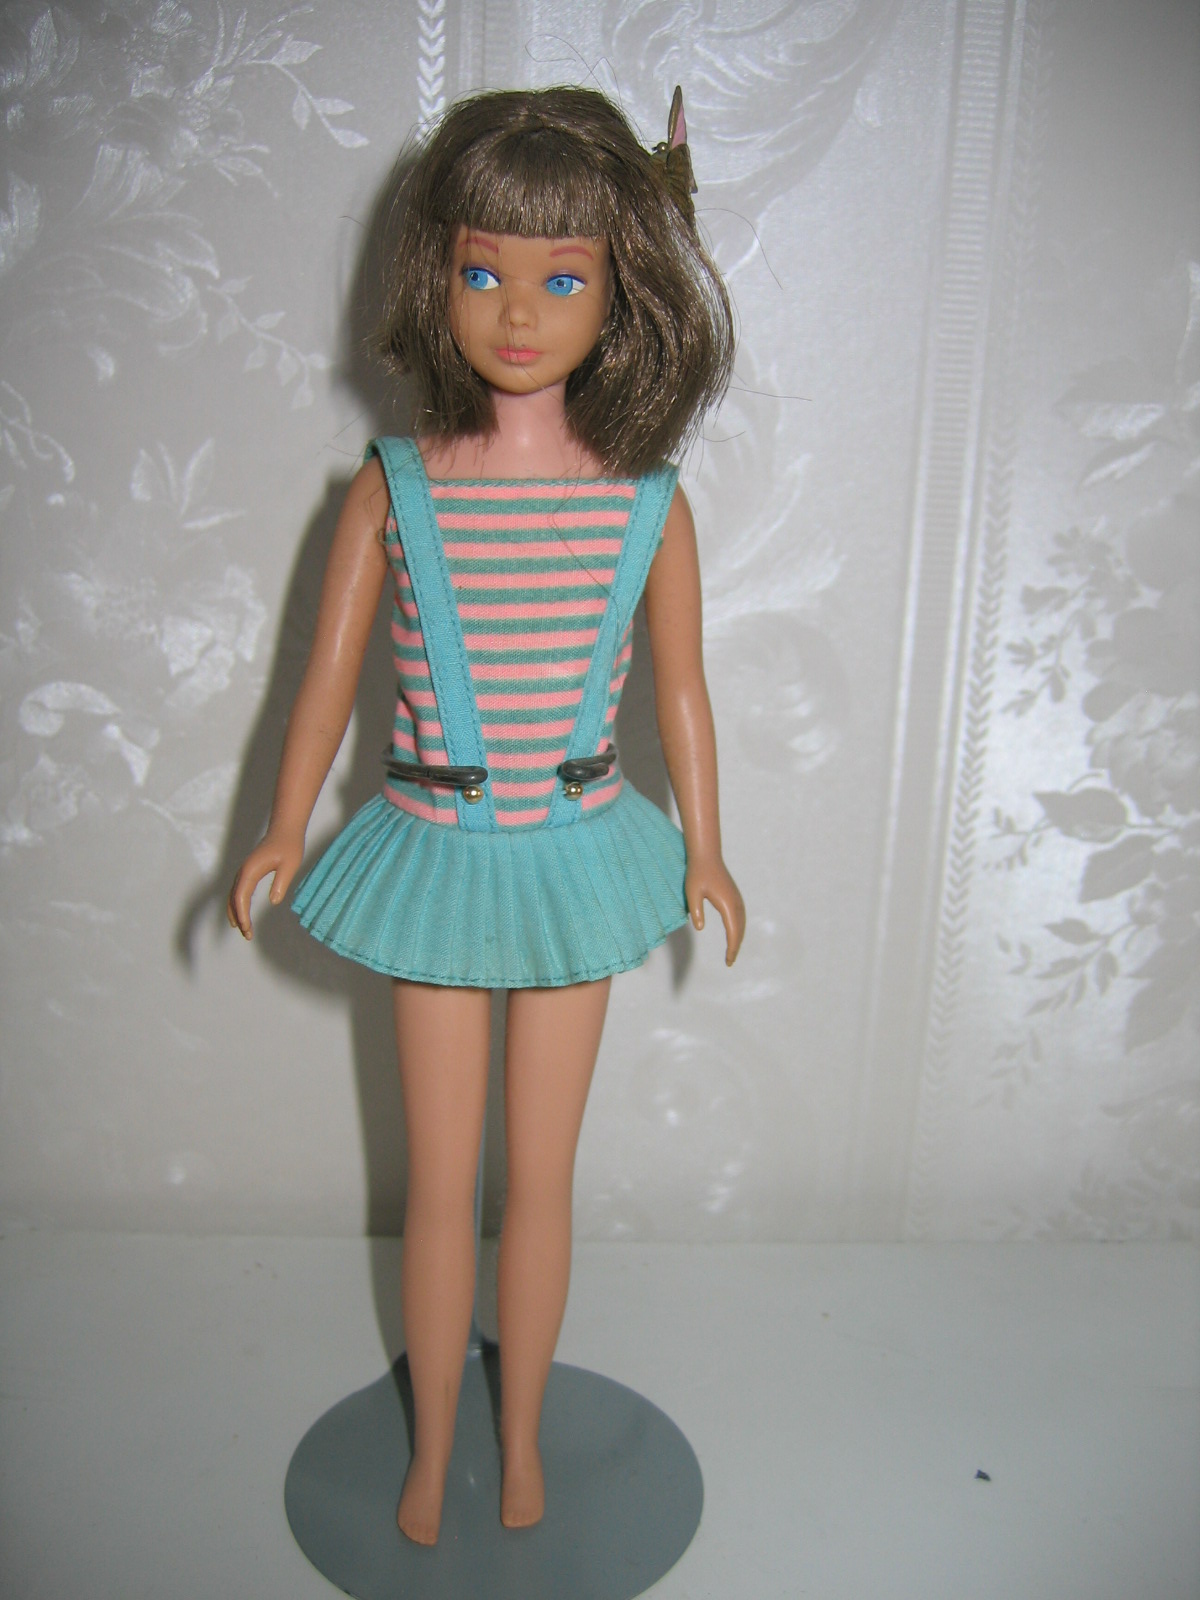 Vintage Barbie Doll For Sale 73